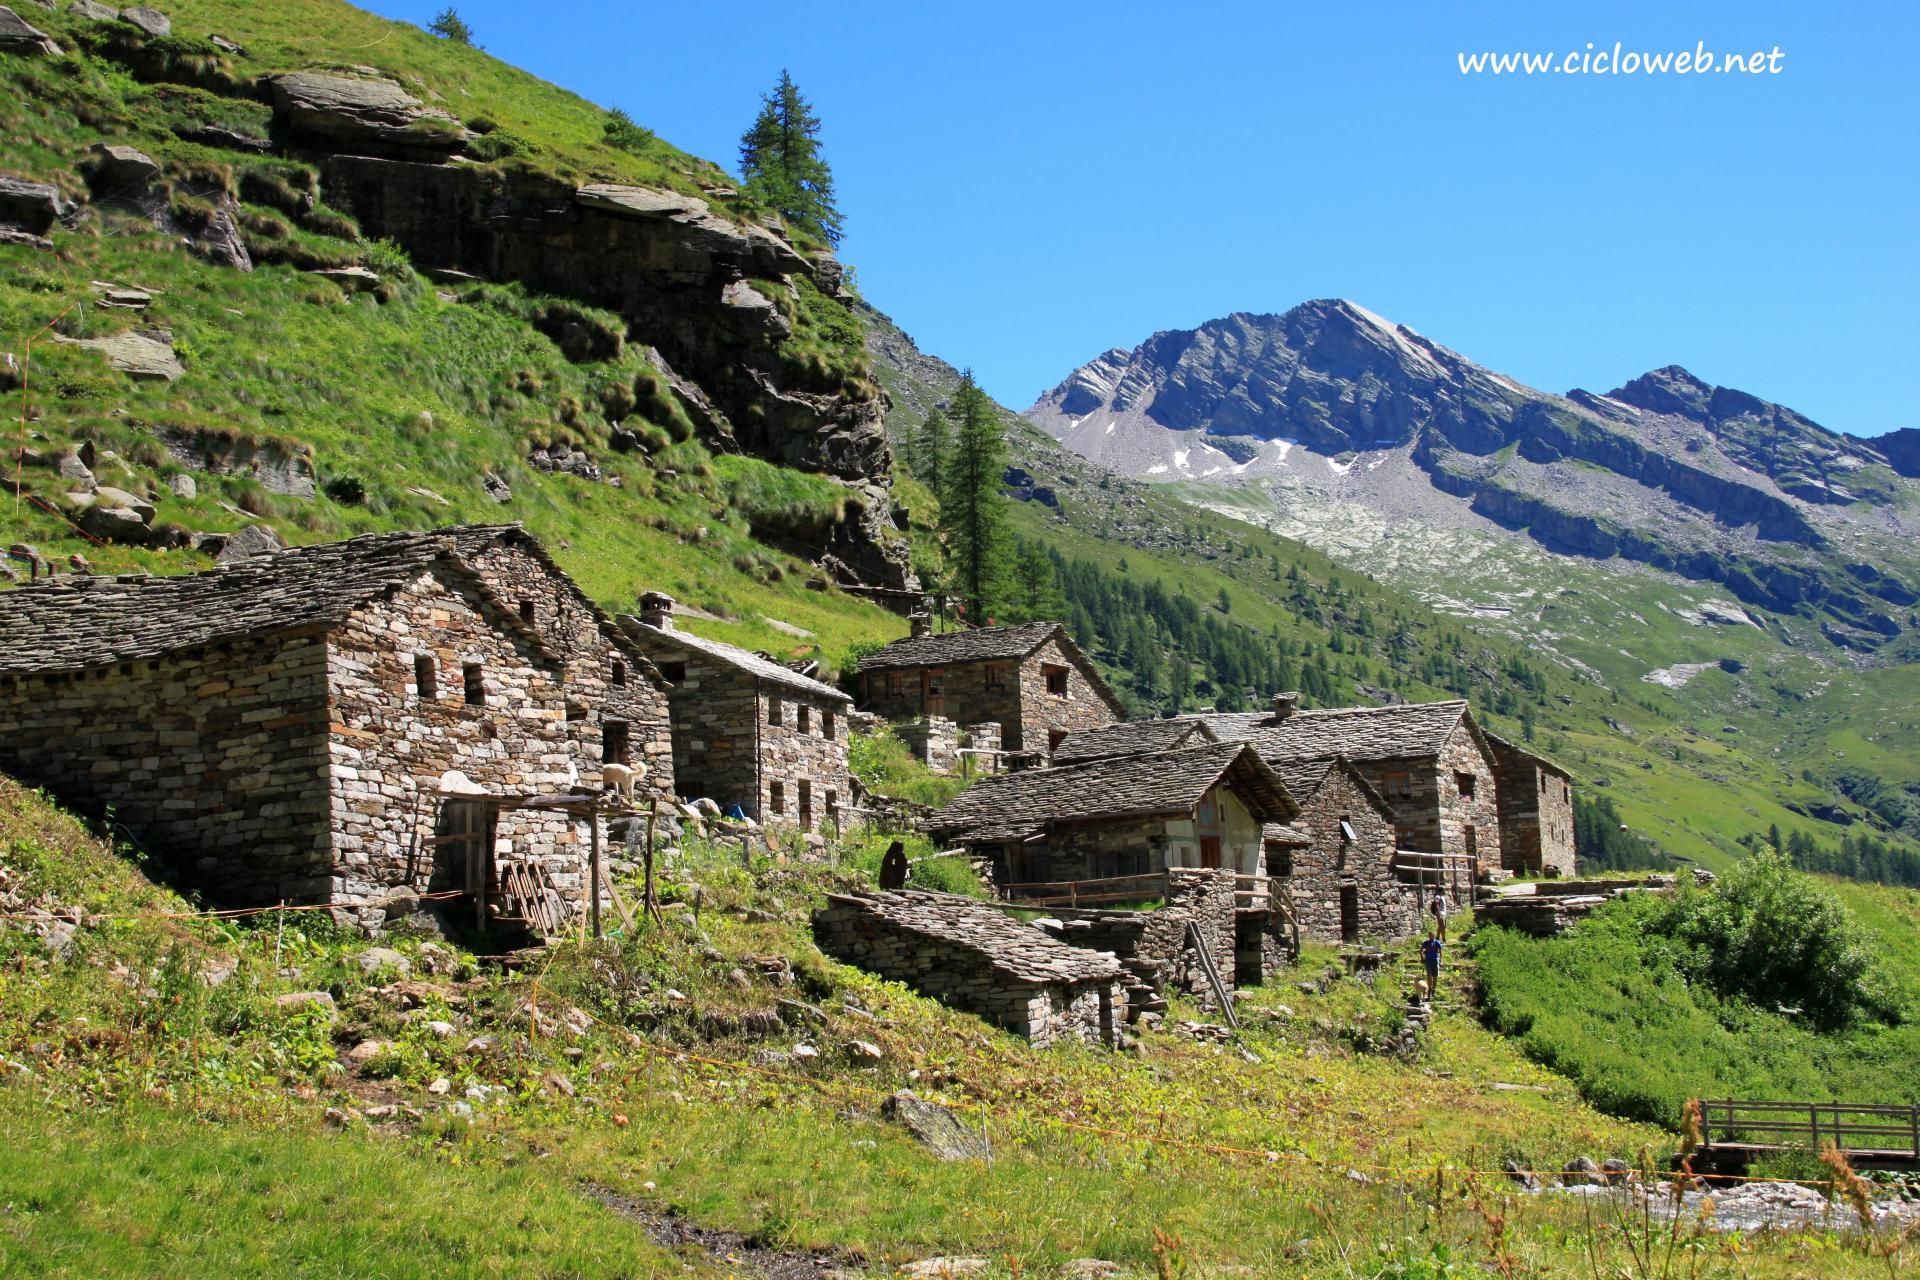 027 - Alpe Bors e rifugio Crespi Calderini, sullo sfondo il Monte Rosa.jpg